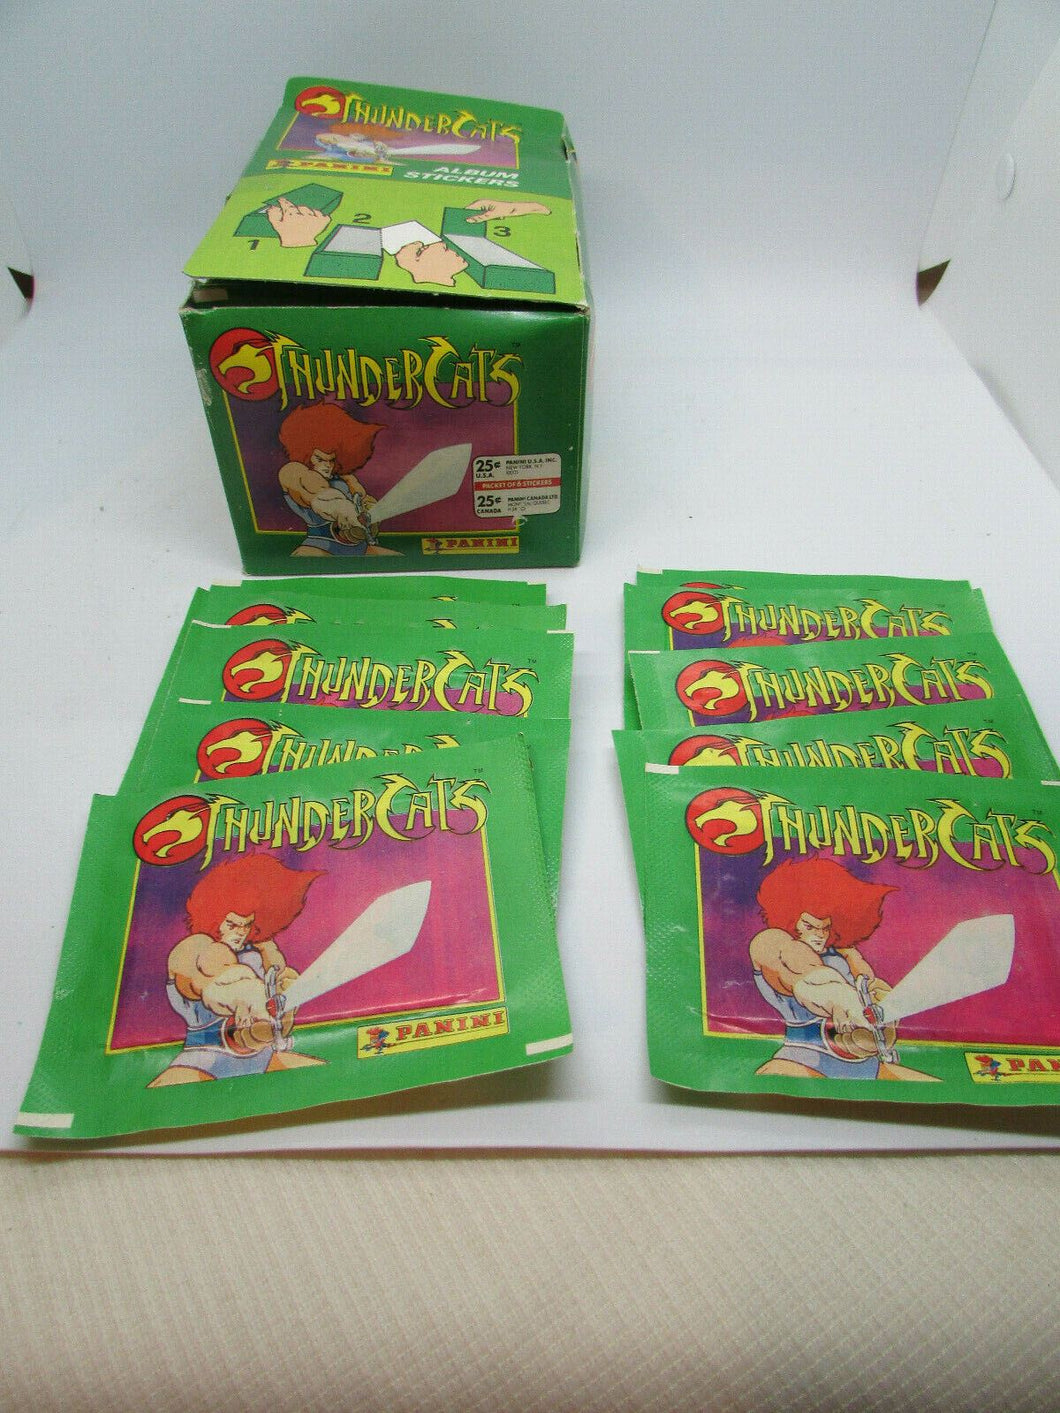 PANINI THUNDERCATS STICKERS 10 UNOPENED PACKS WITH ORIGINAL BOX 1986